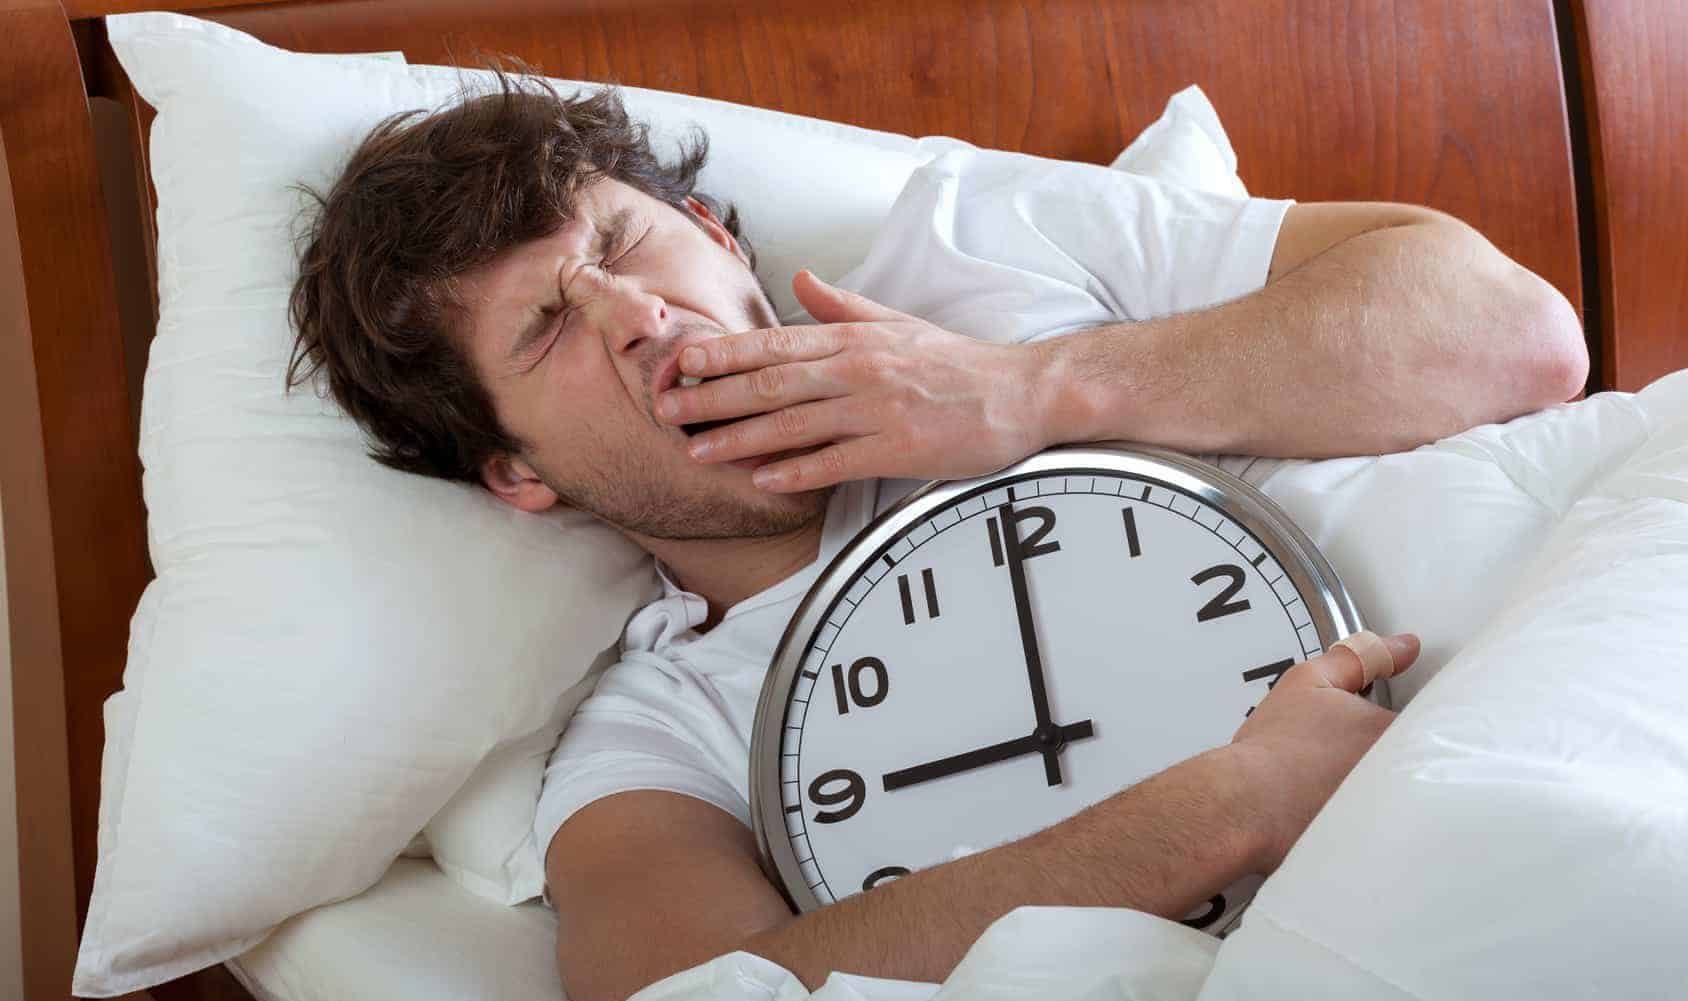 النوم وحده لا يكفي.. 7 طرق للحصول على الراحة